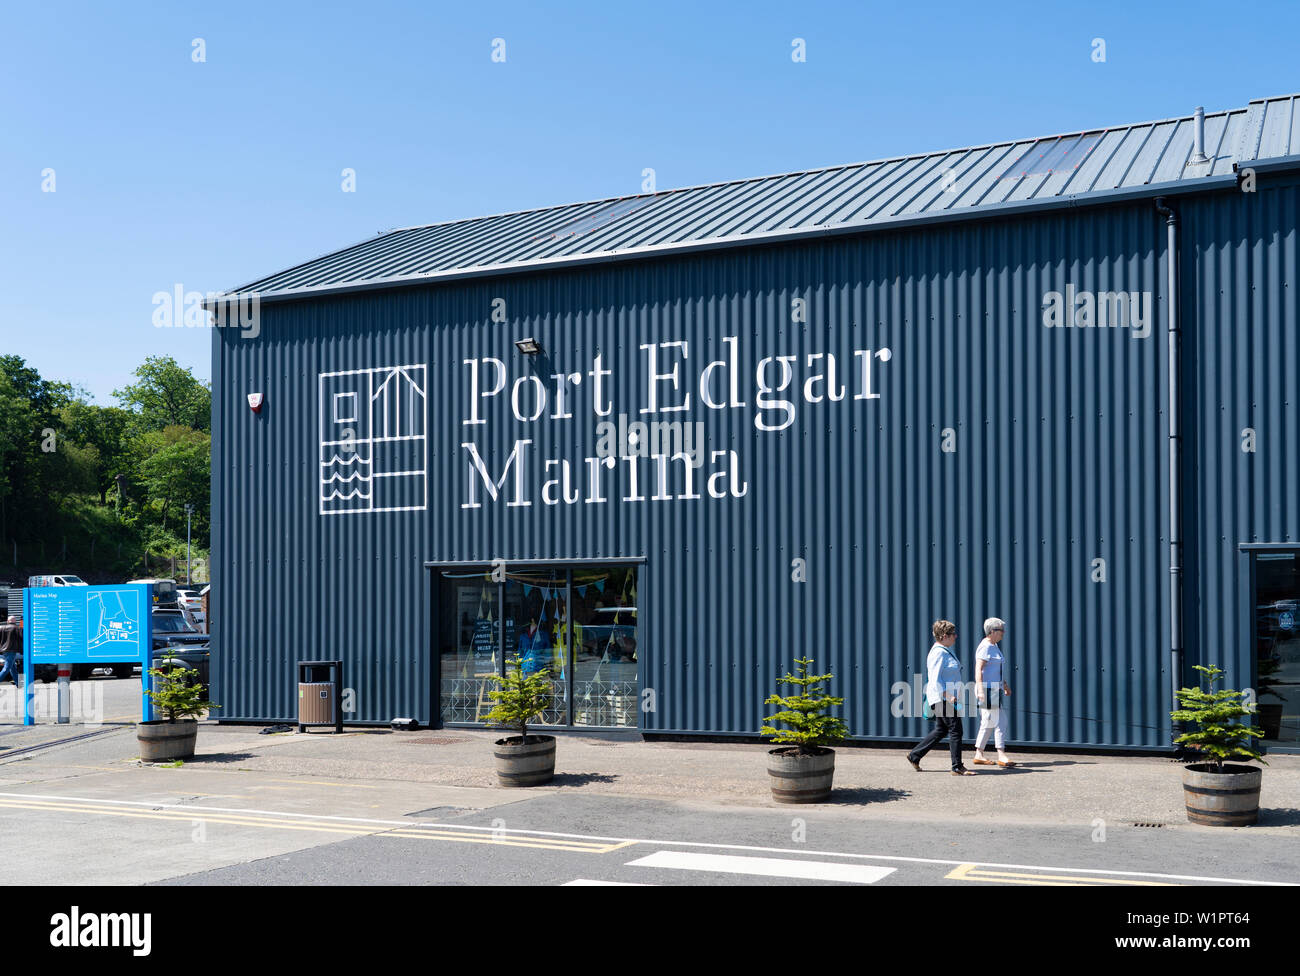 Avis de vente à Port Edgar marina à South Queensferry, West Lothian, Scotland, UK Banque D'Images